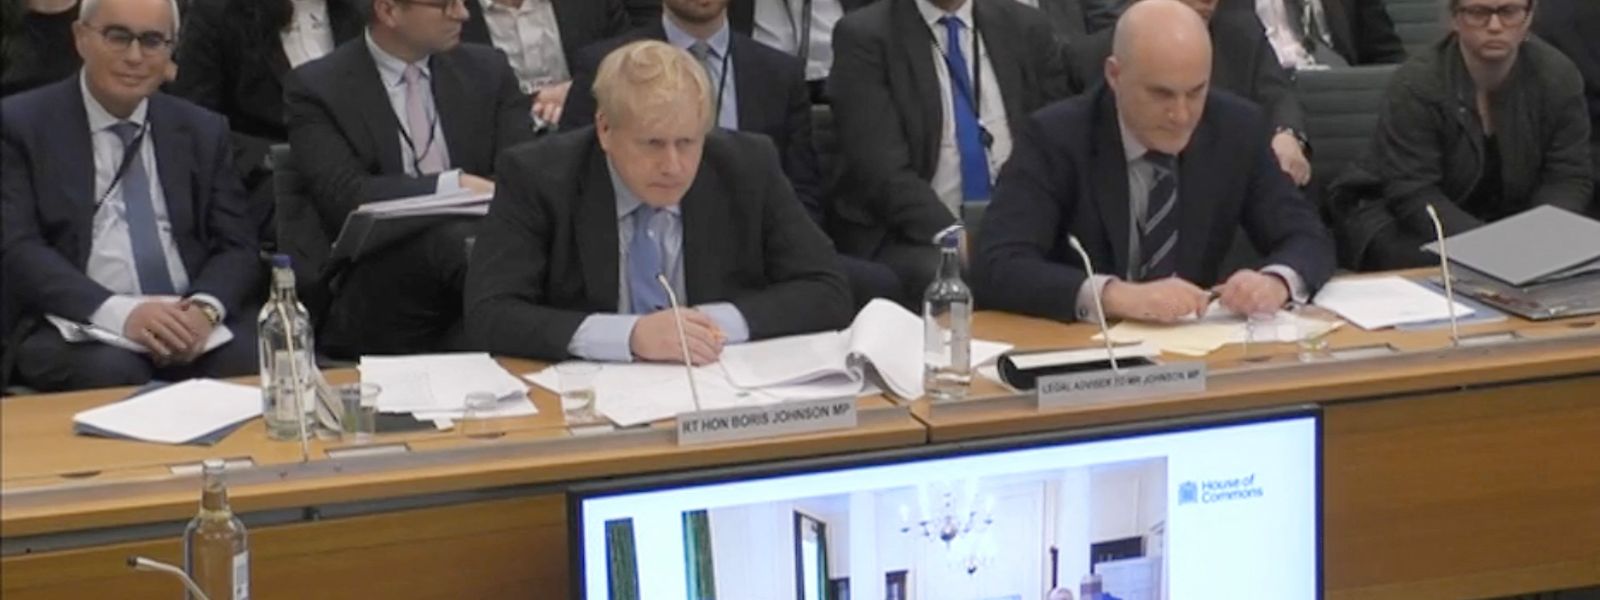 Boris Johnson bei der Anhörung im Privilegienausschuss des britischen Parlaments